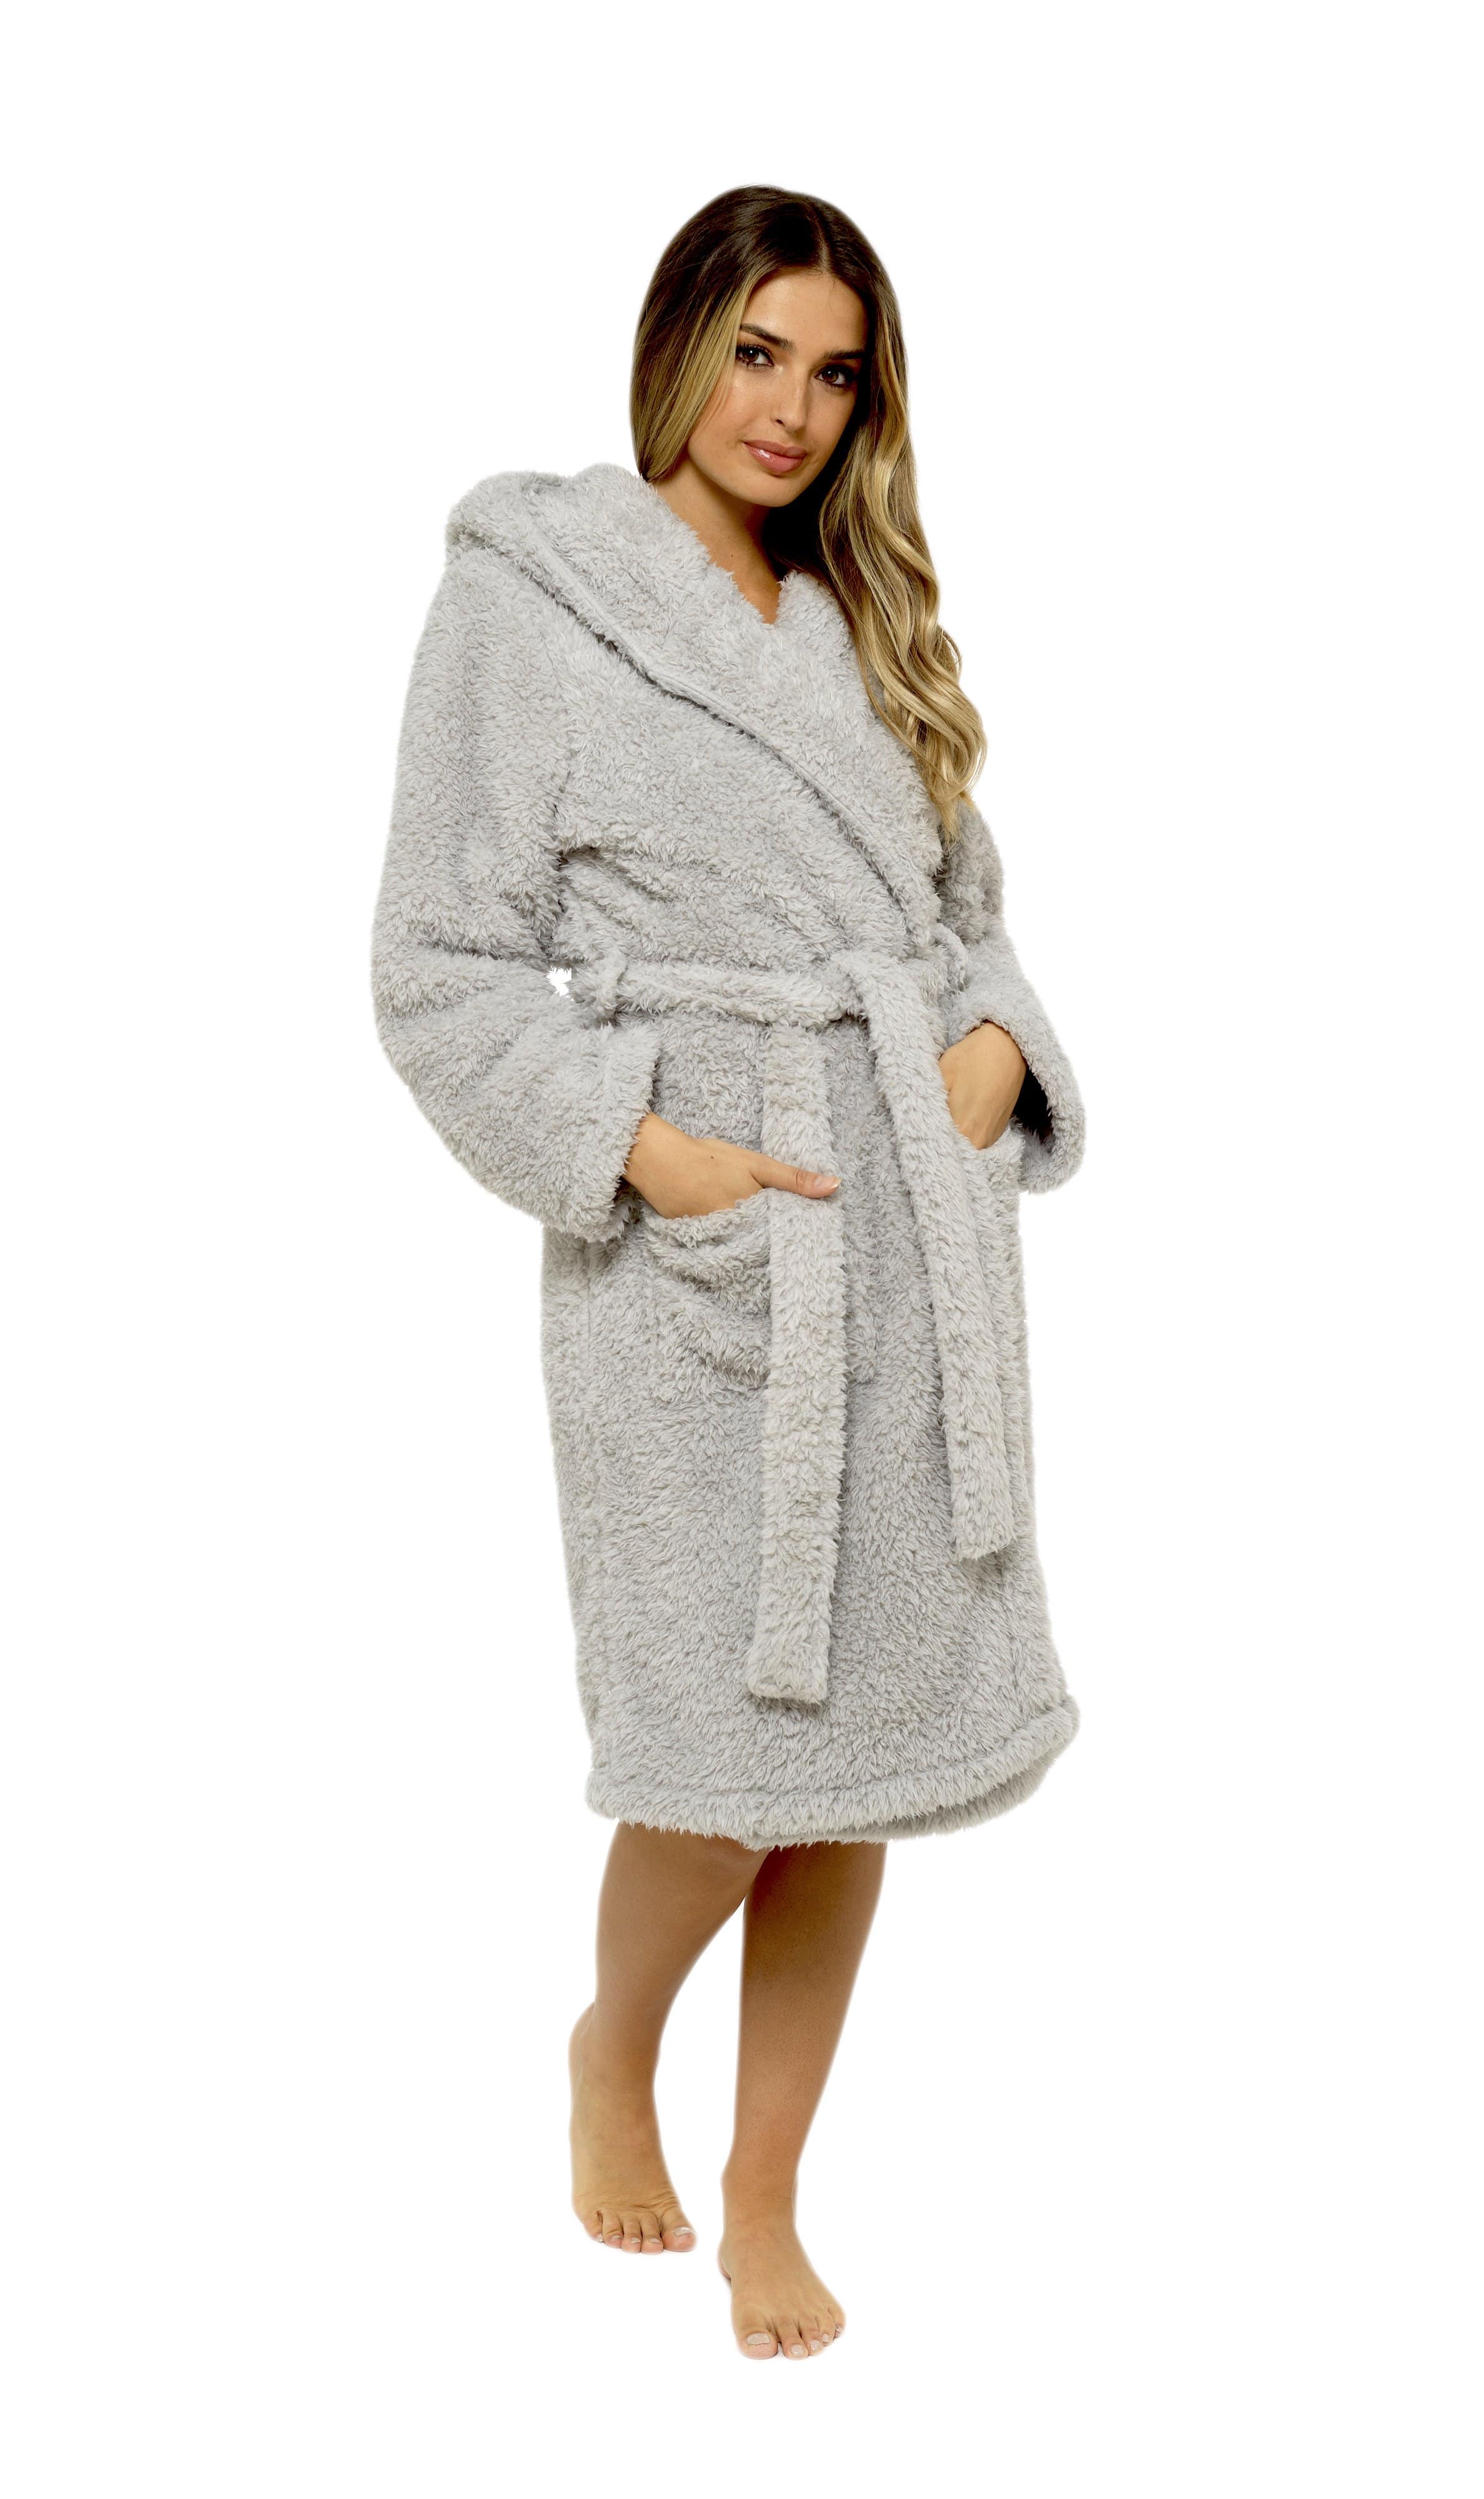 Women's Zip Up Plush Fleece Robe Hooded Warm Long Bathrobe Dressing Gown  Winter Cozy Zipper Lounger Sleepwear Housecoat Loungewear Nightgown |  Fruugo KR